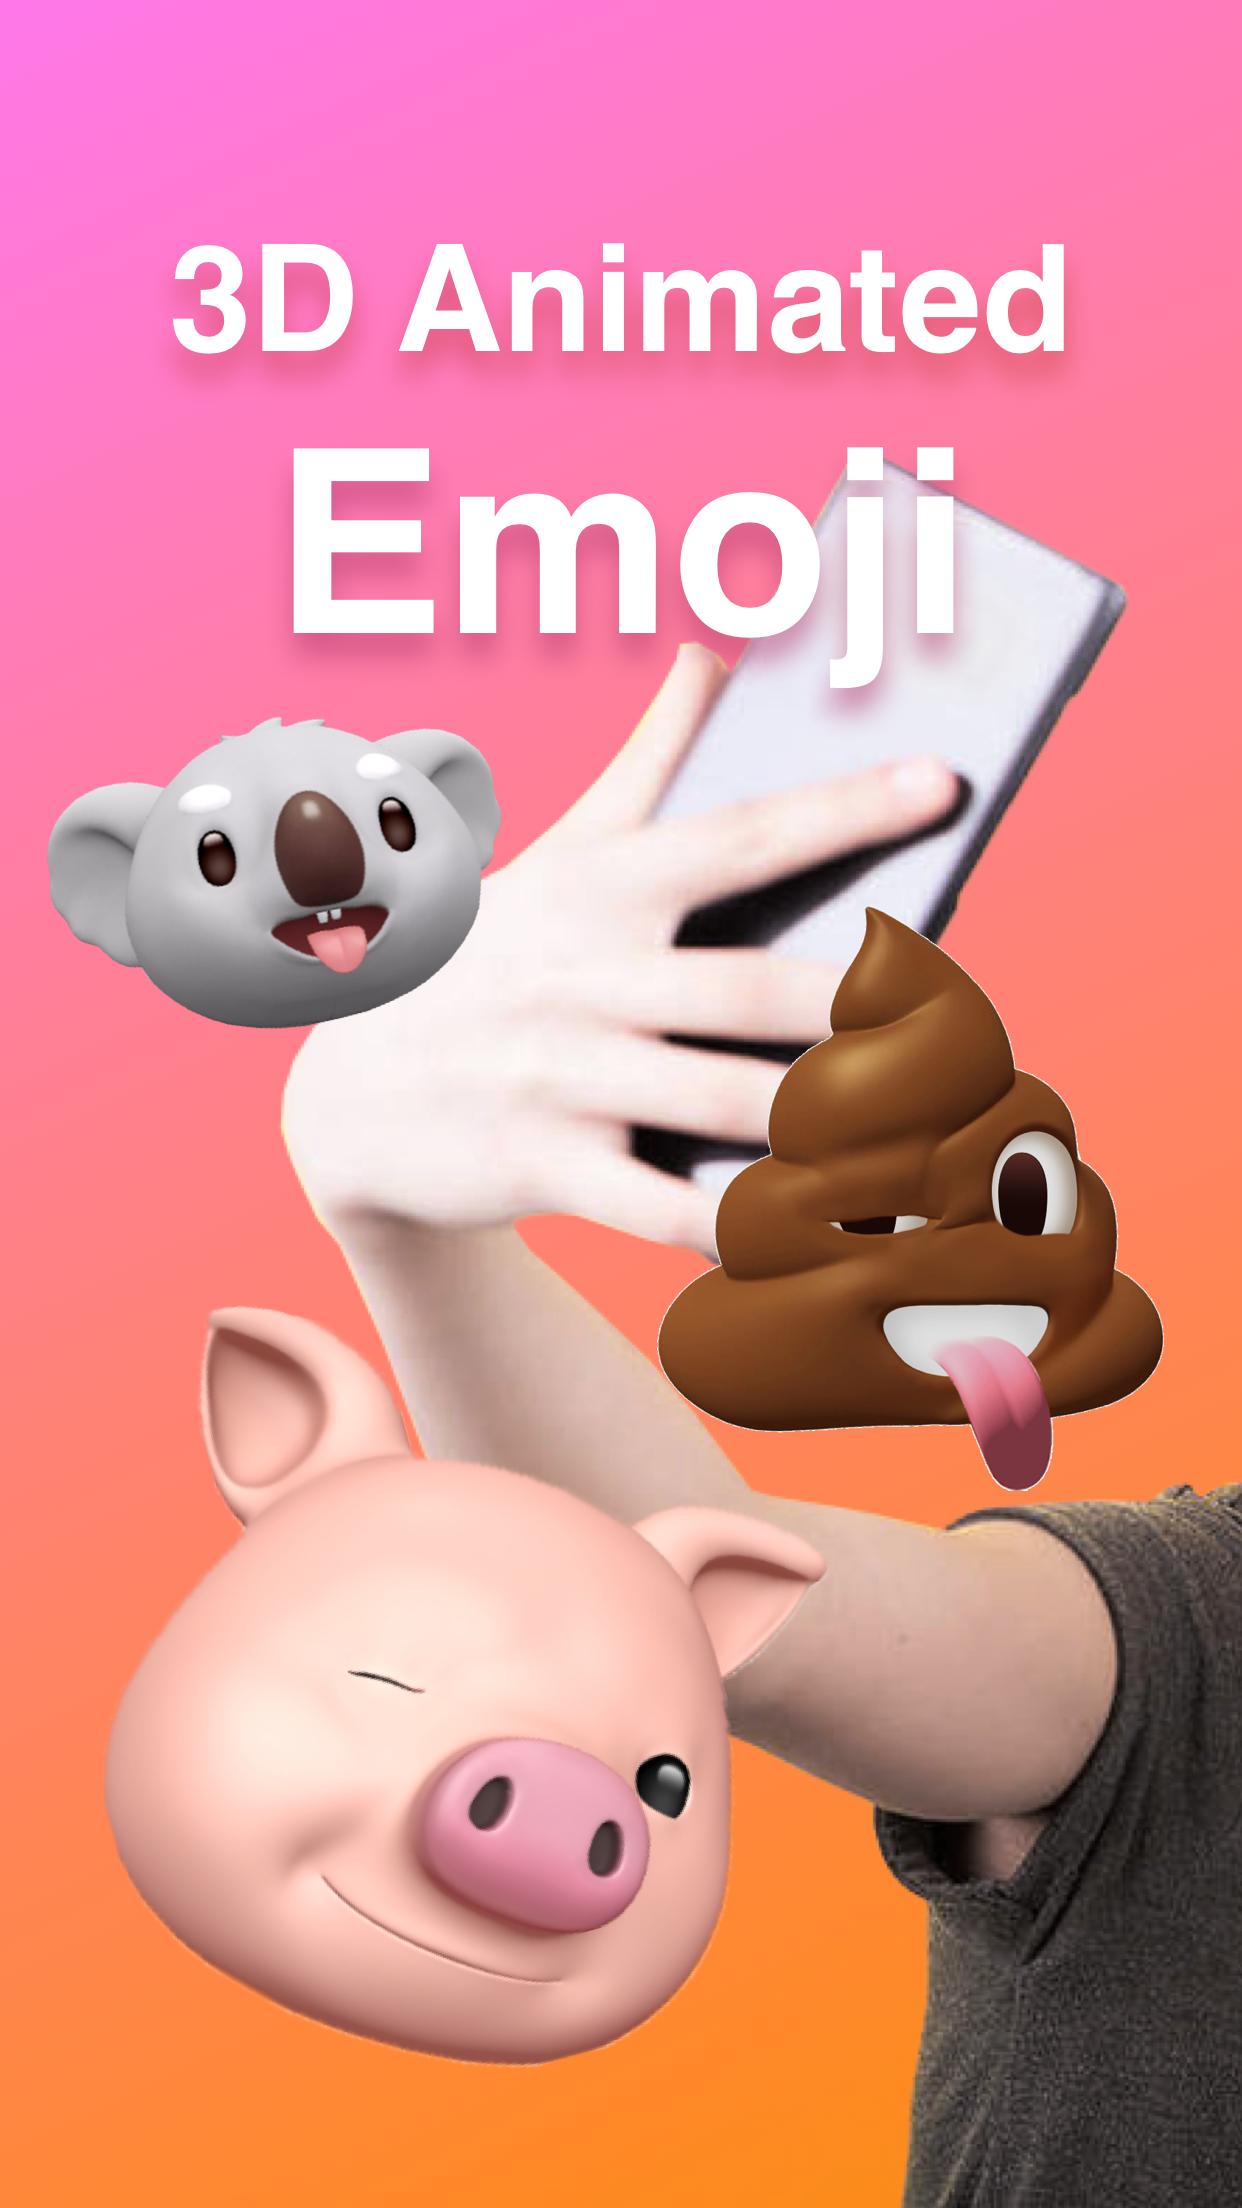 Livemoji- Animoji Cam & AR Emoji Face app